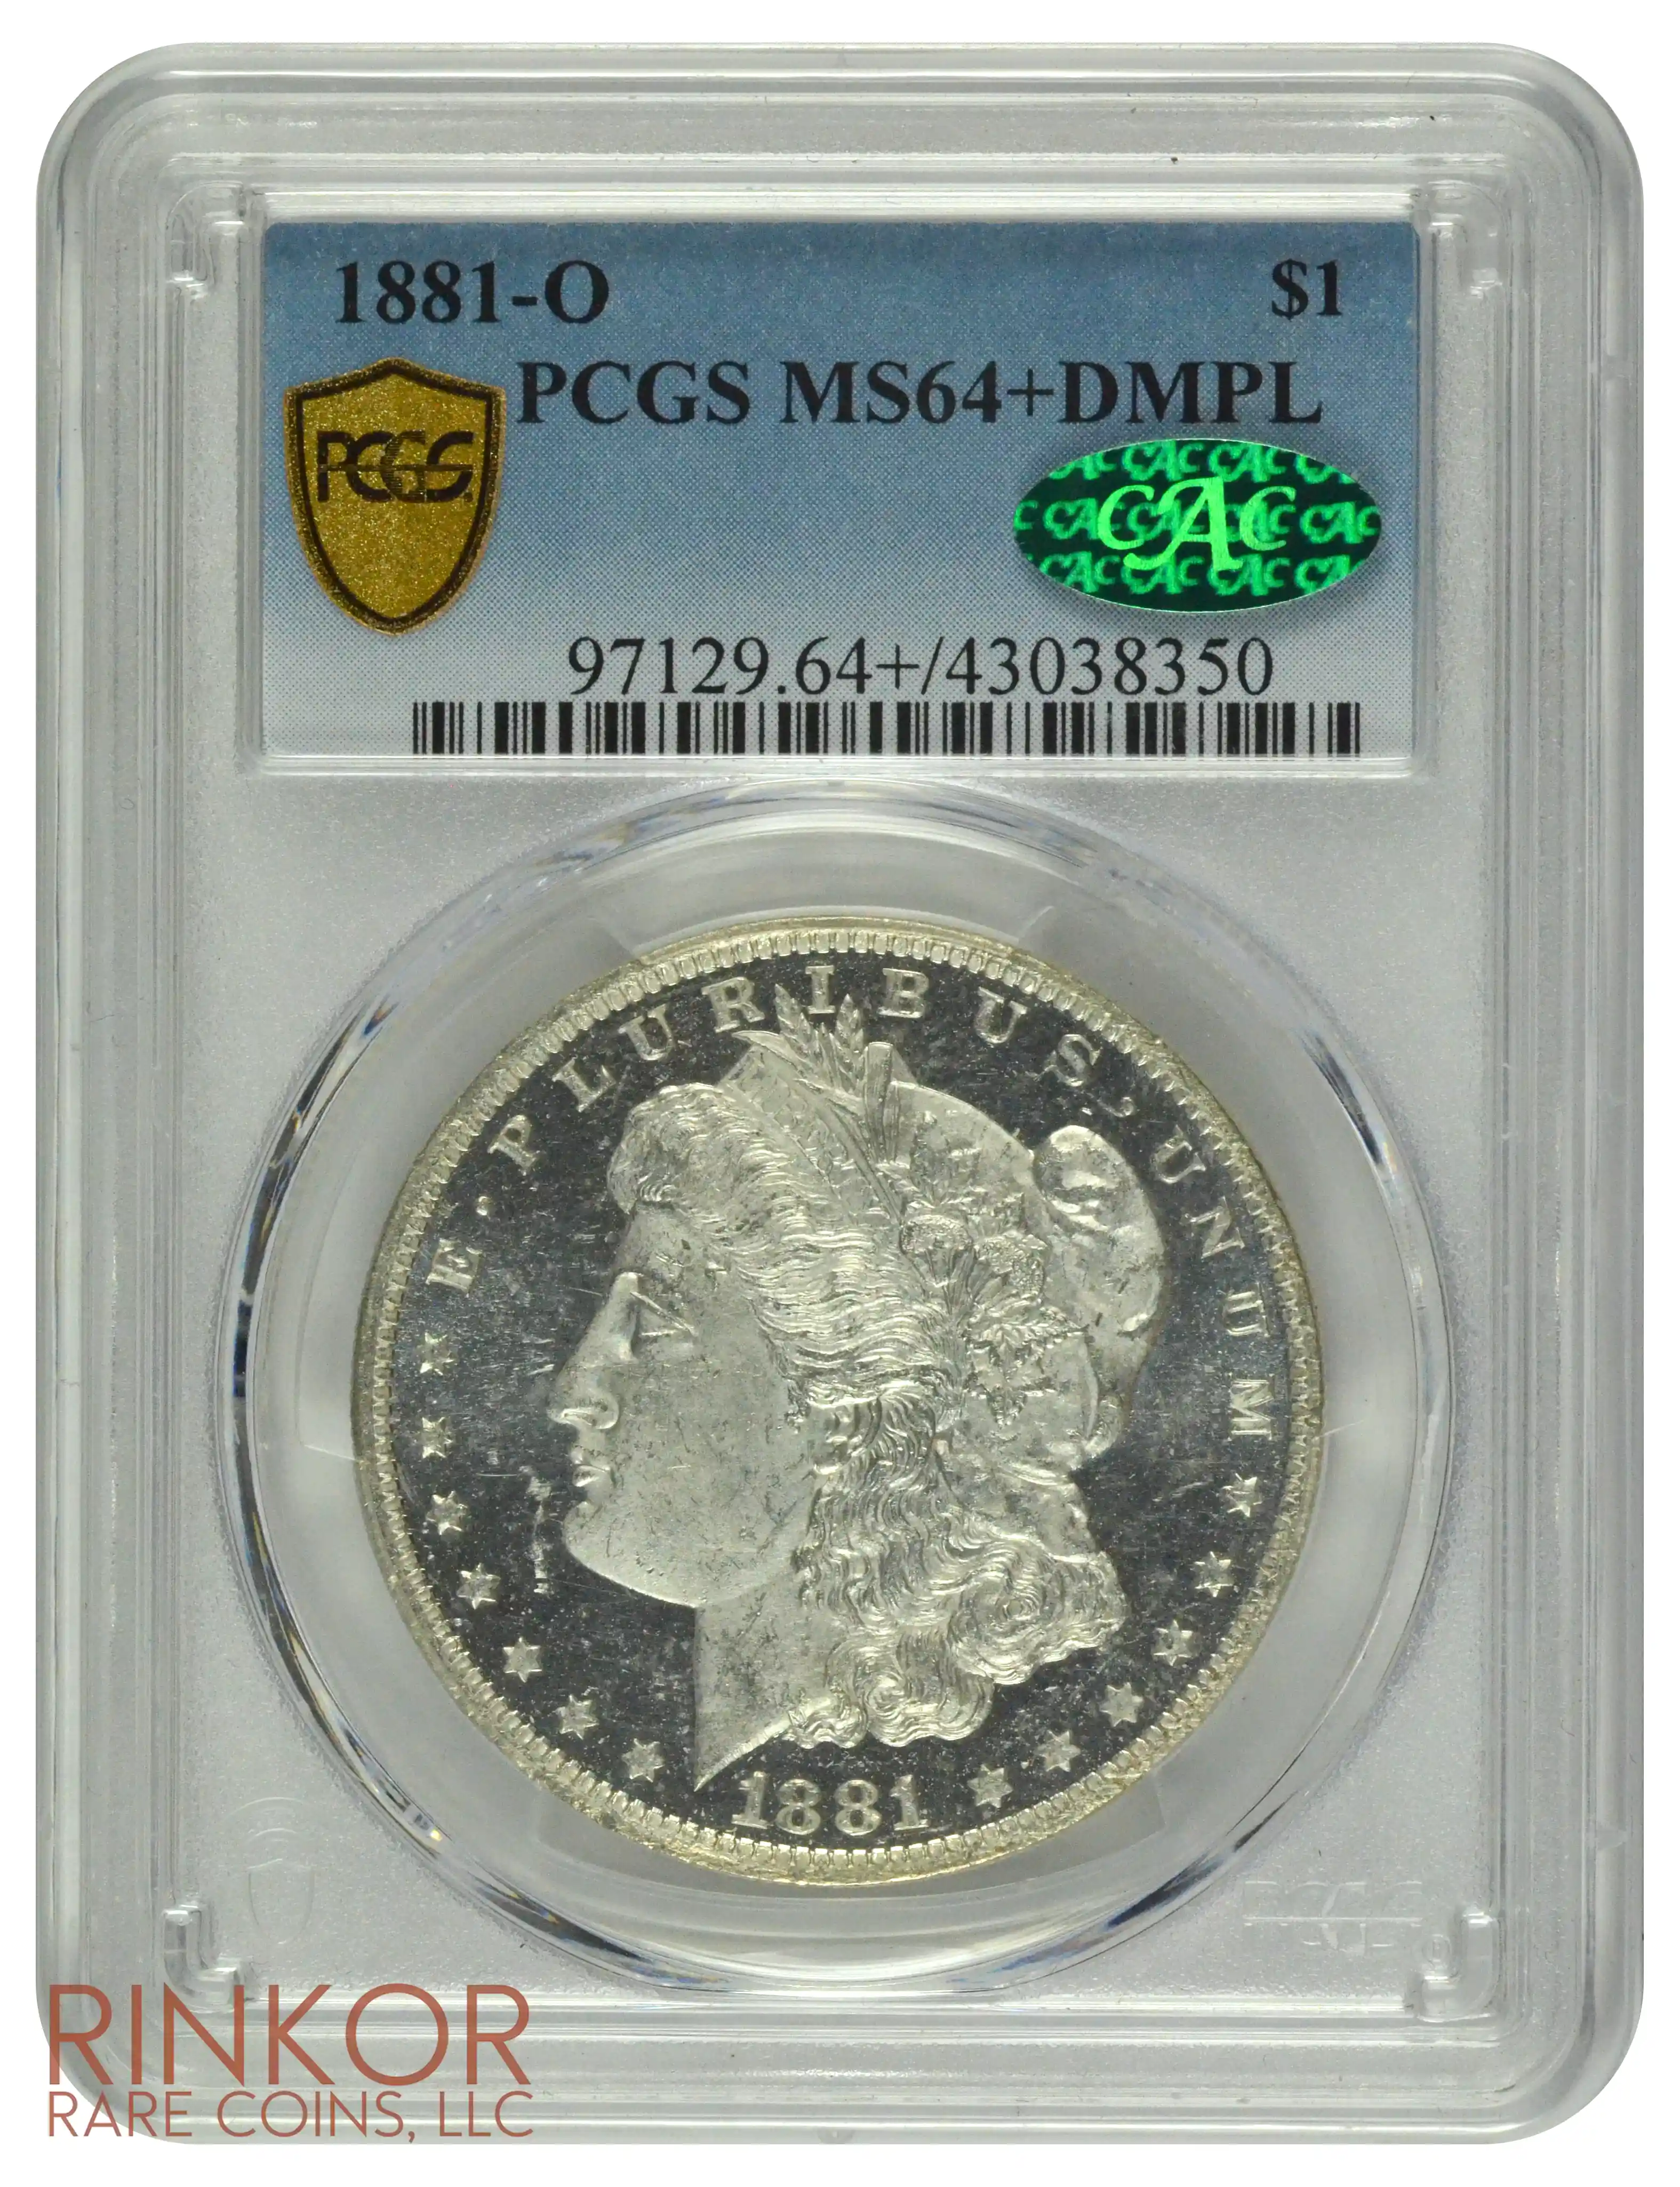 1881-O $1 PCGS